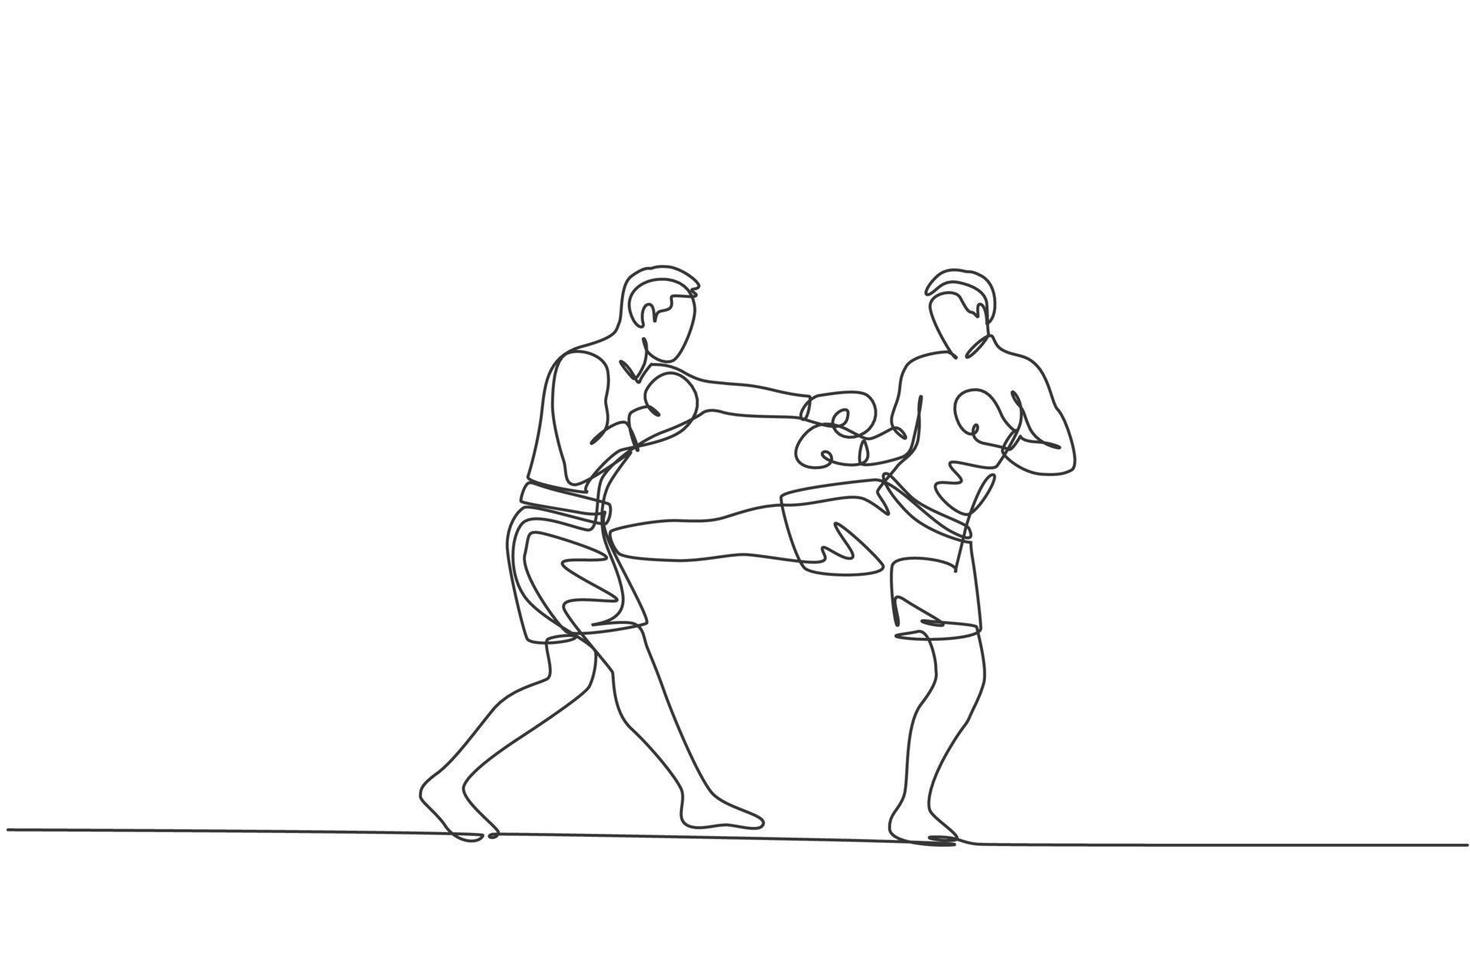 un disegno a linea singola di un giovane energico kickboxer che combatte nel torneo locale al grafico di illustrazione vettoriale dell'arena di boxe. concetto di sport di stile di vita sano. moderno disegno a linea continua